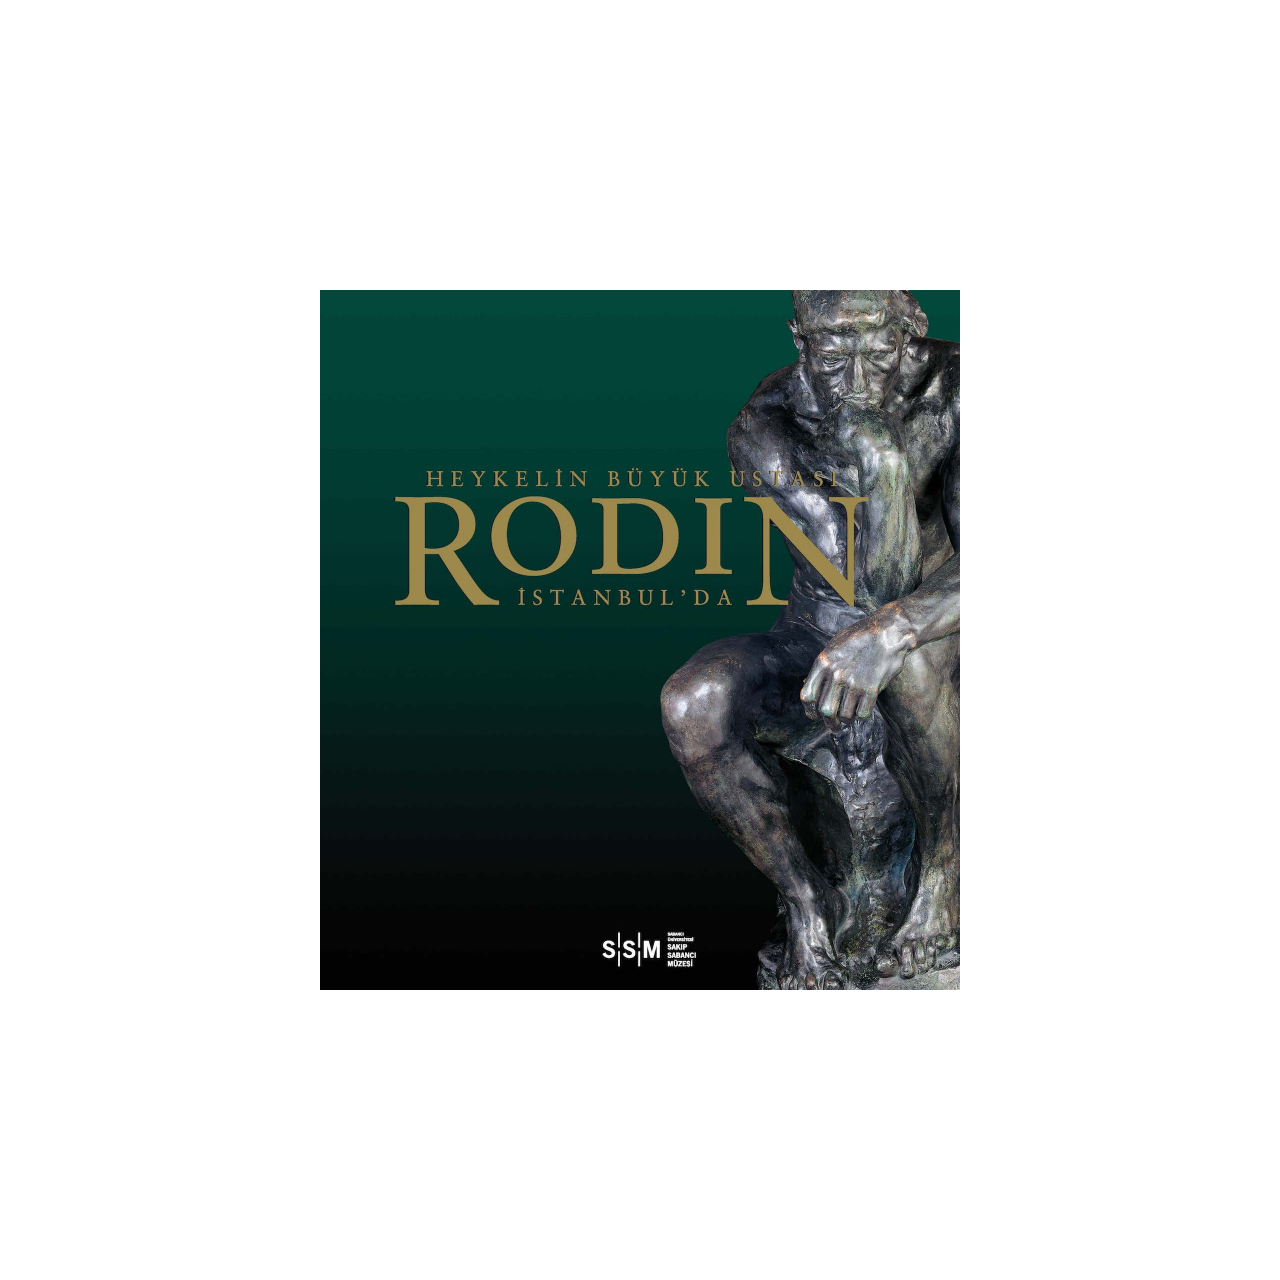 Heykelin Büyük Ustası Rodin İstanbul’da